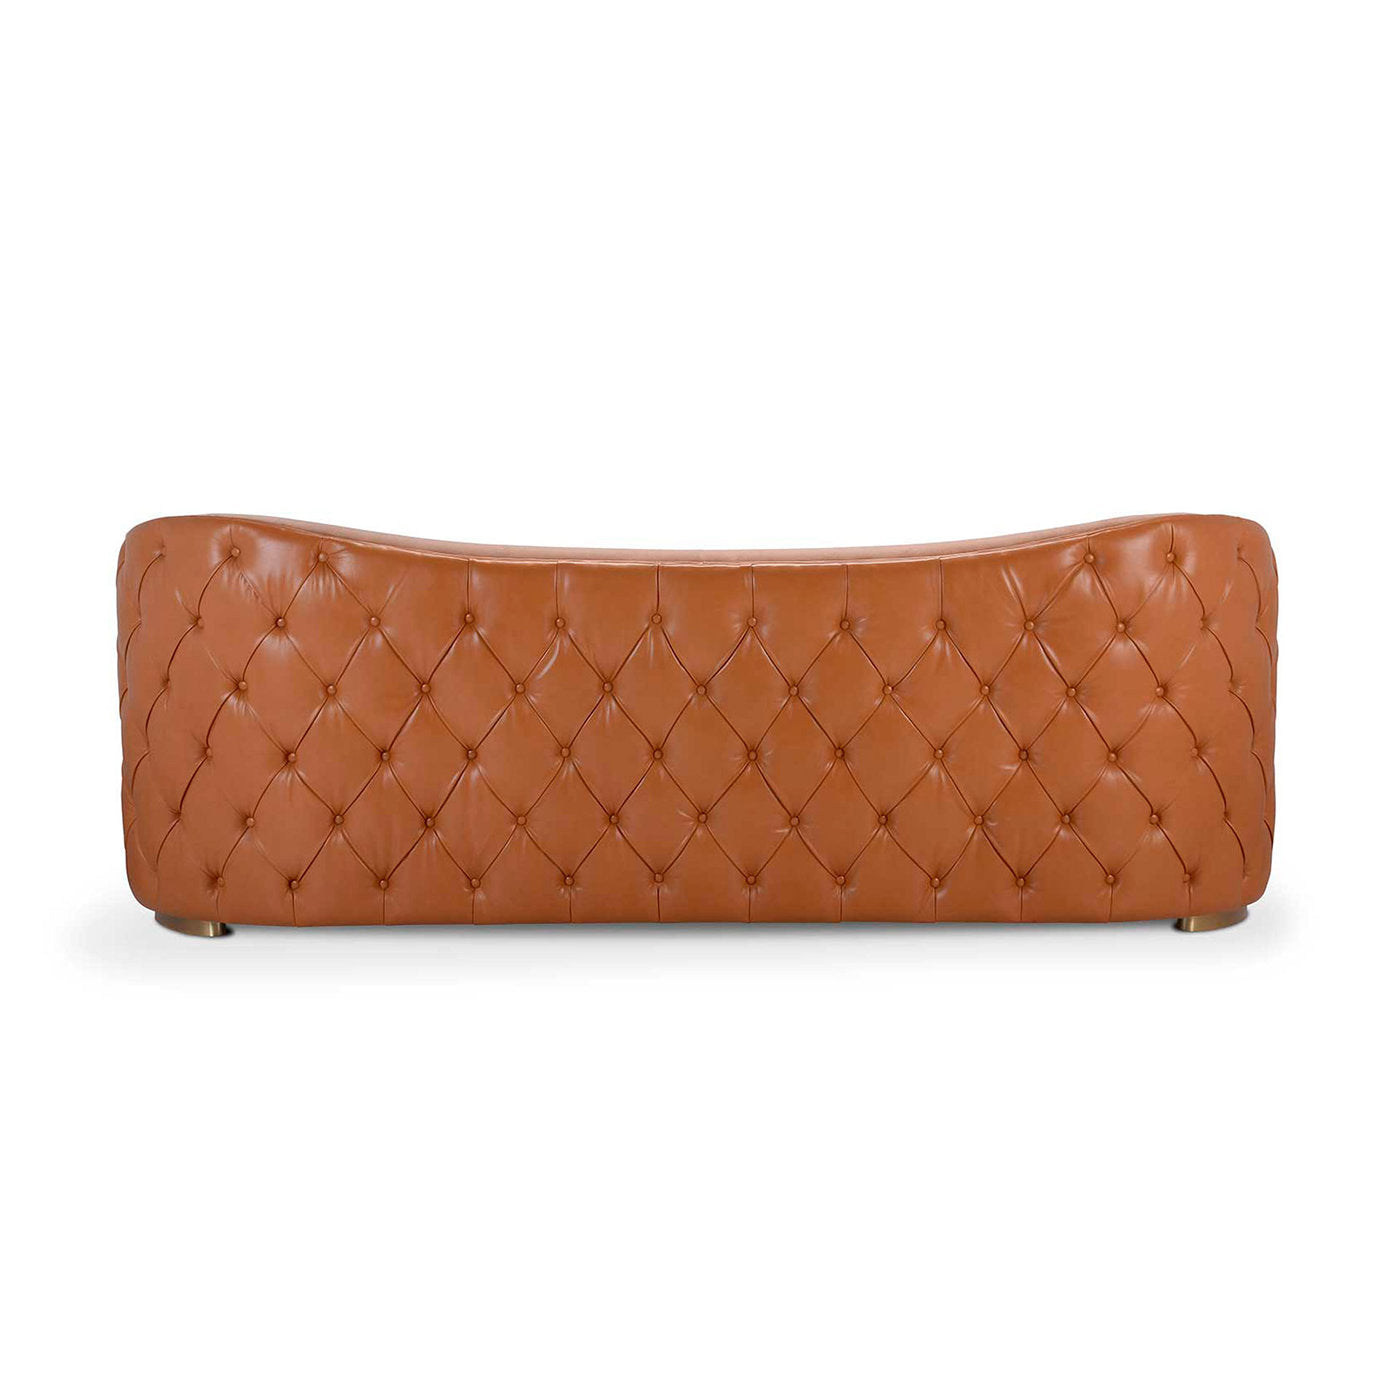 Cleio 3-Seater Leather Sofa - Alternative view 3